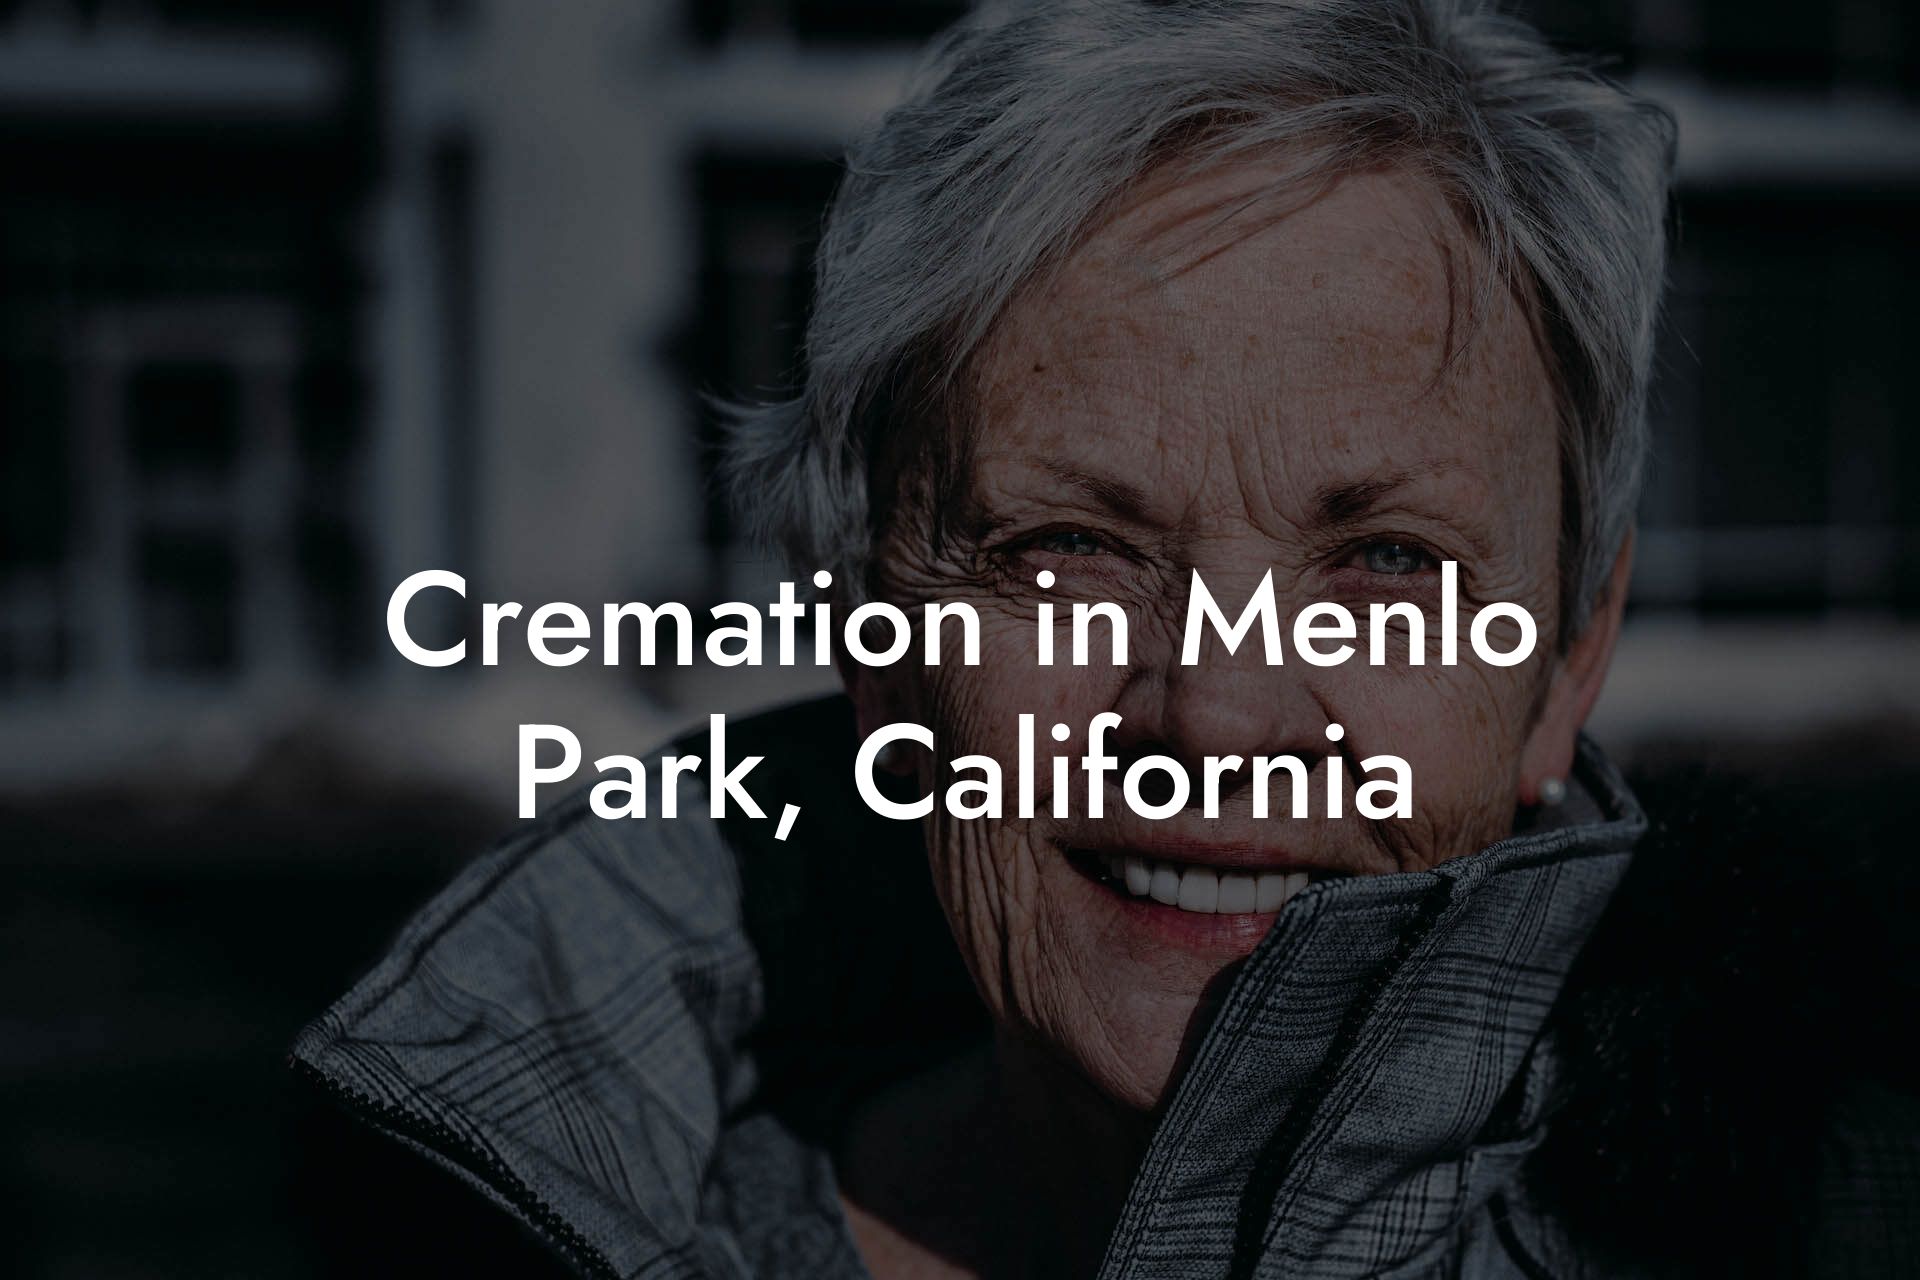 Cremation in Menlo Park, California